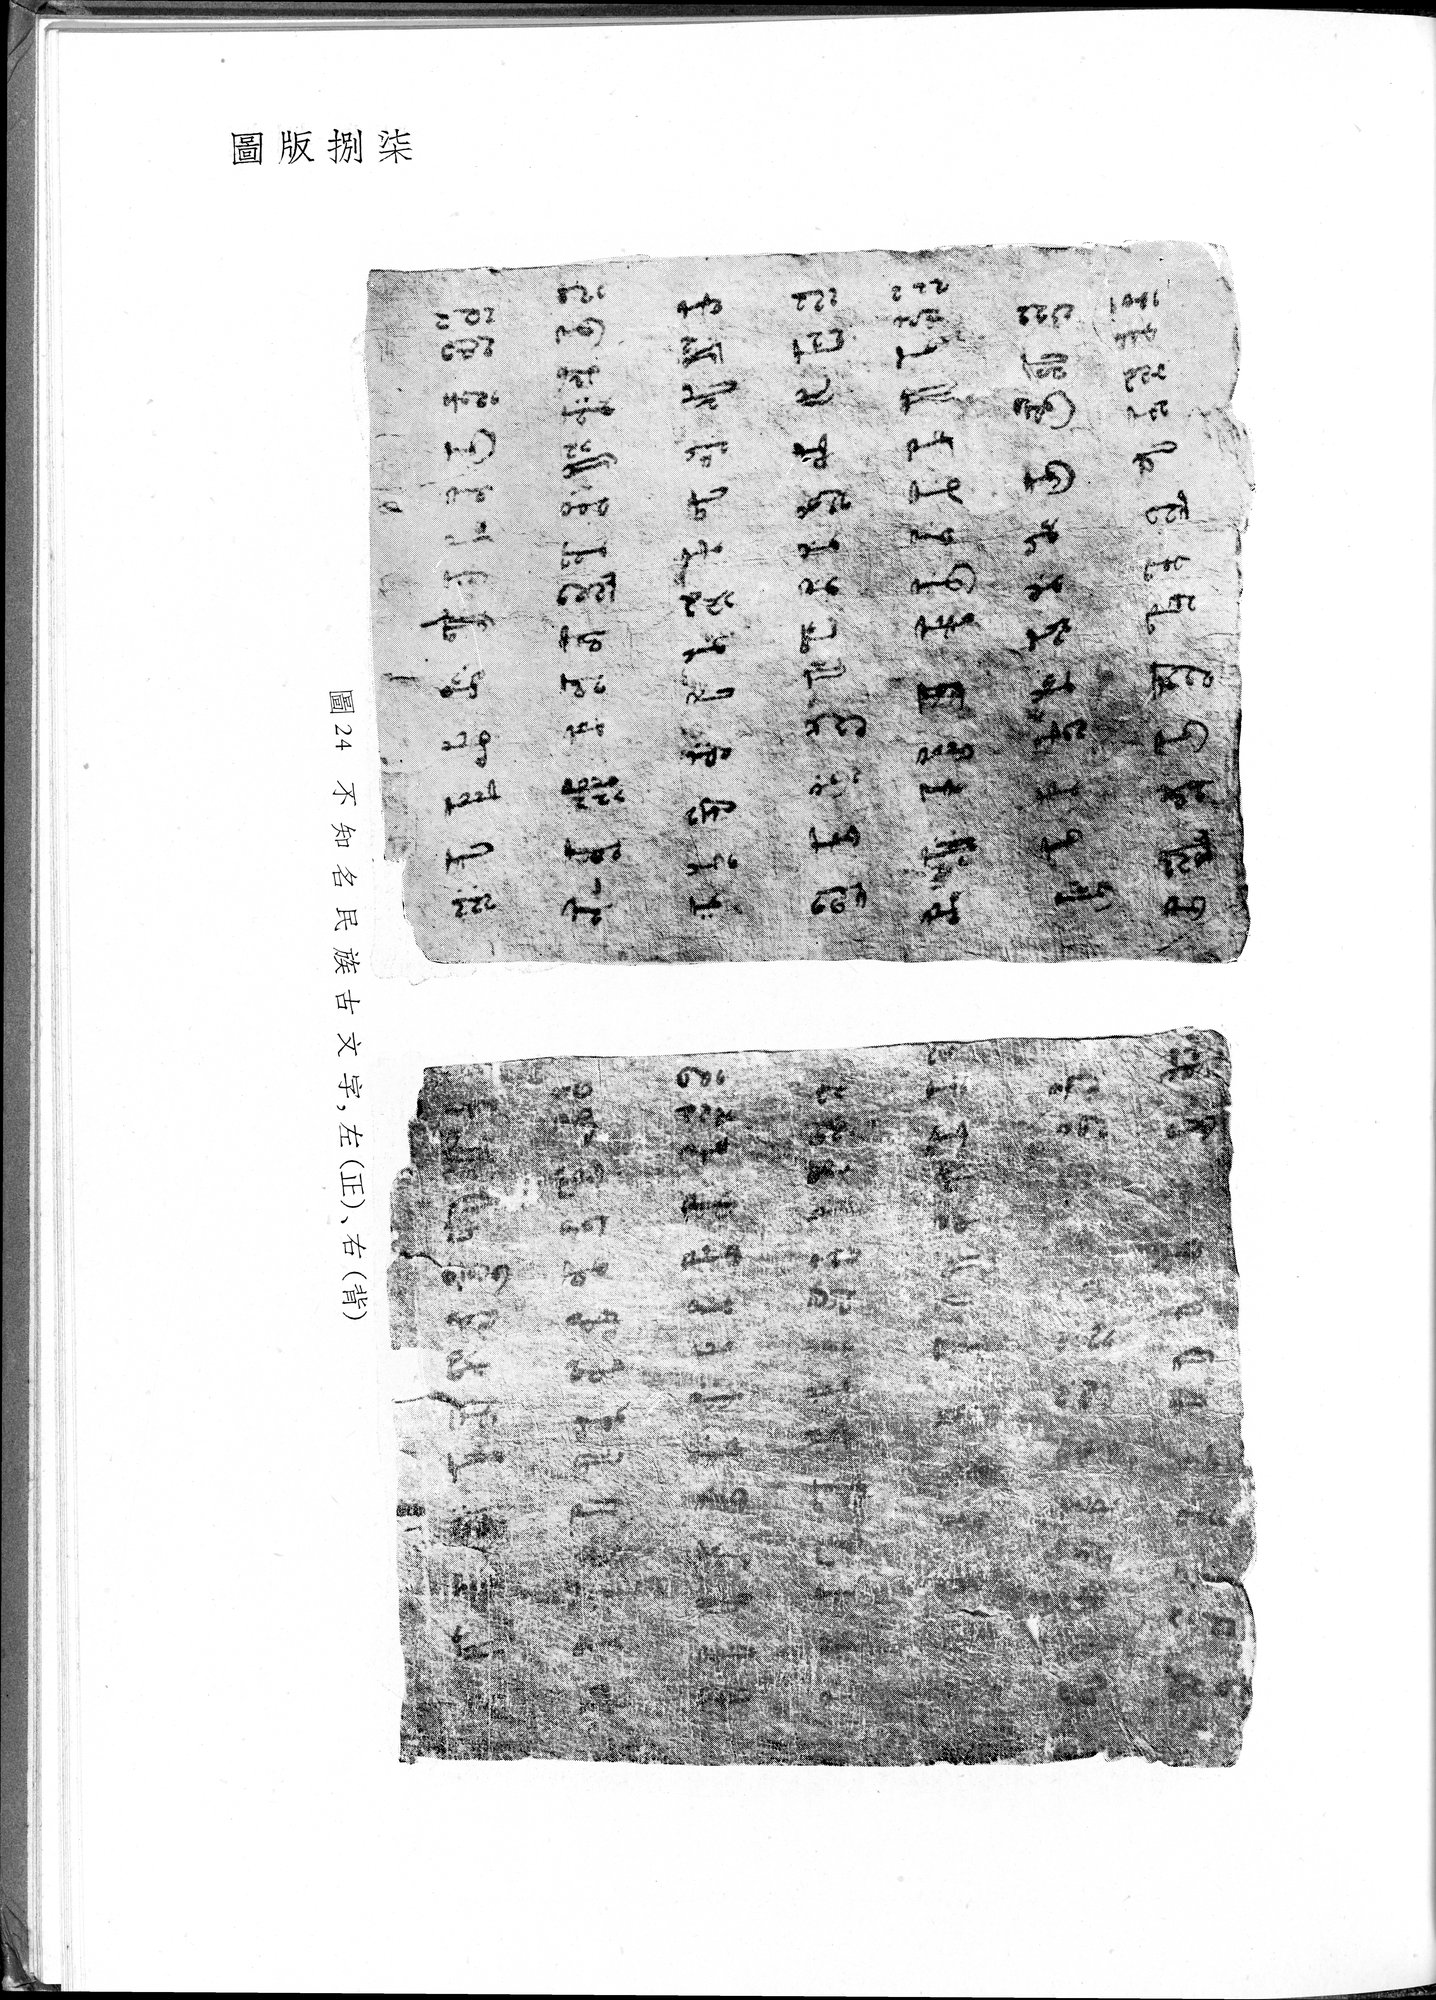 塔里木盆地考古記 : vol.1 / Page 321 (Grayscale High Resolution Image)